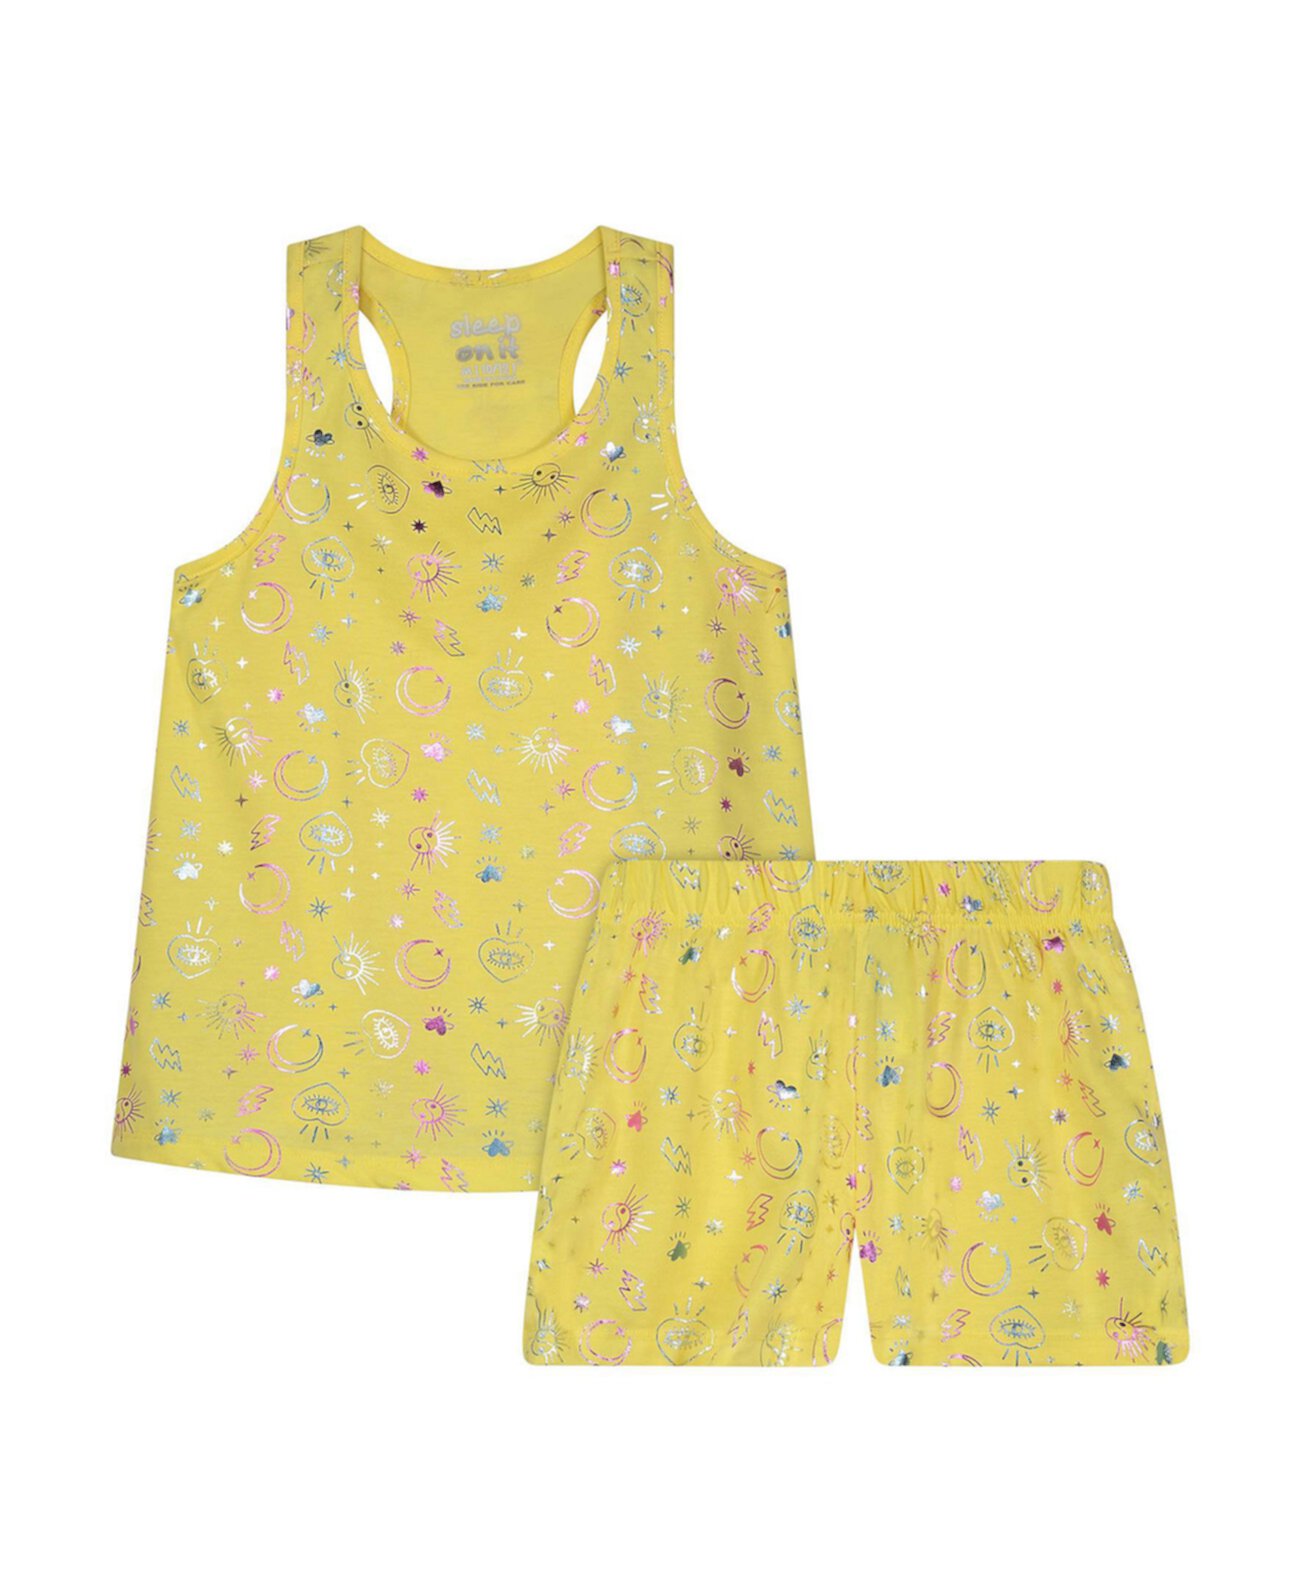 Пижамный комплект с майкой и шортами для больших девочек, 2 предмета Sleep On It